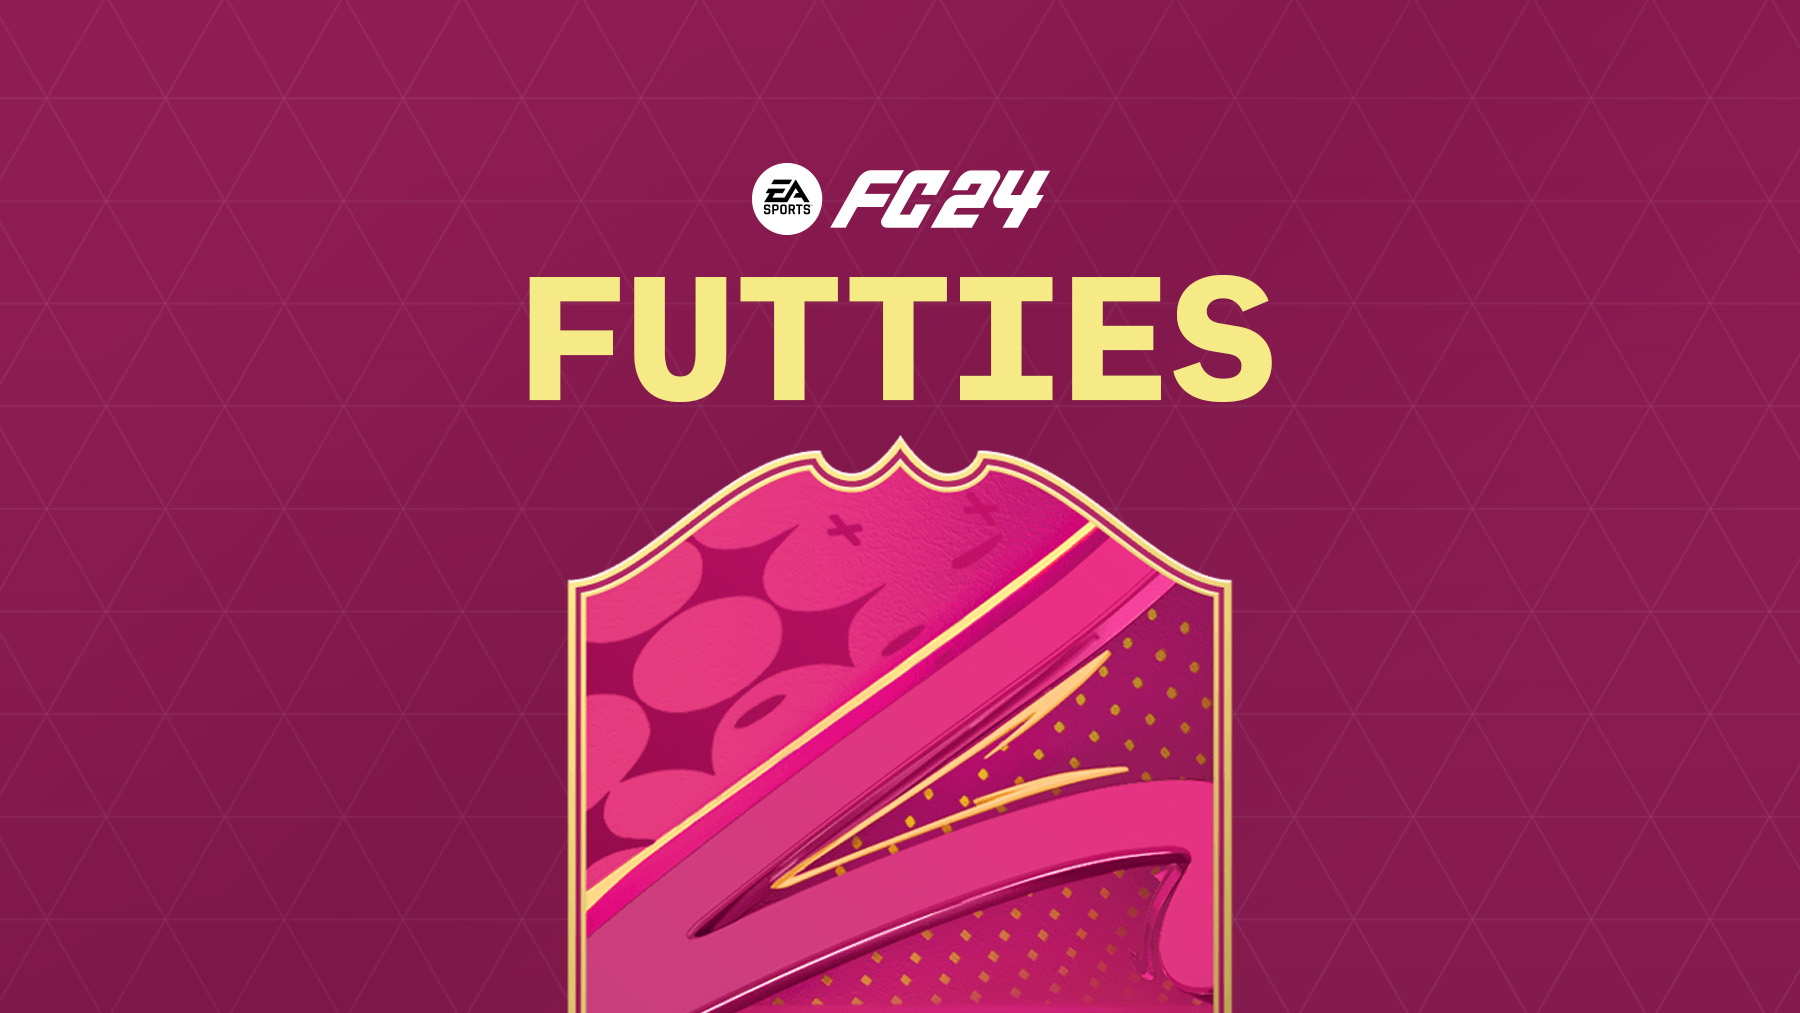 FUTTIES in FC 24